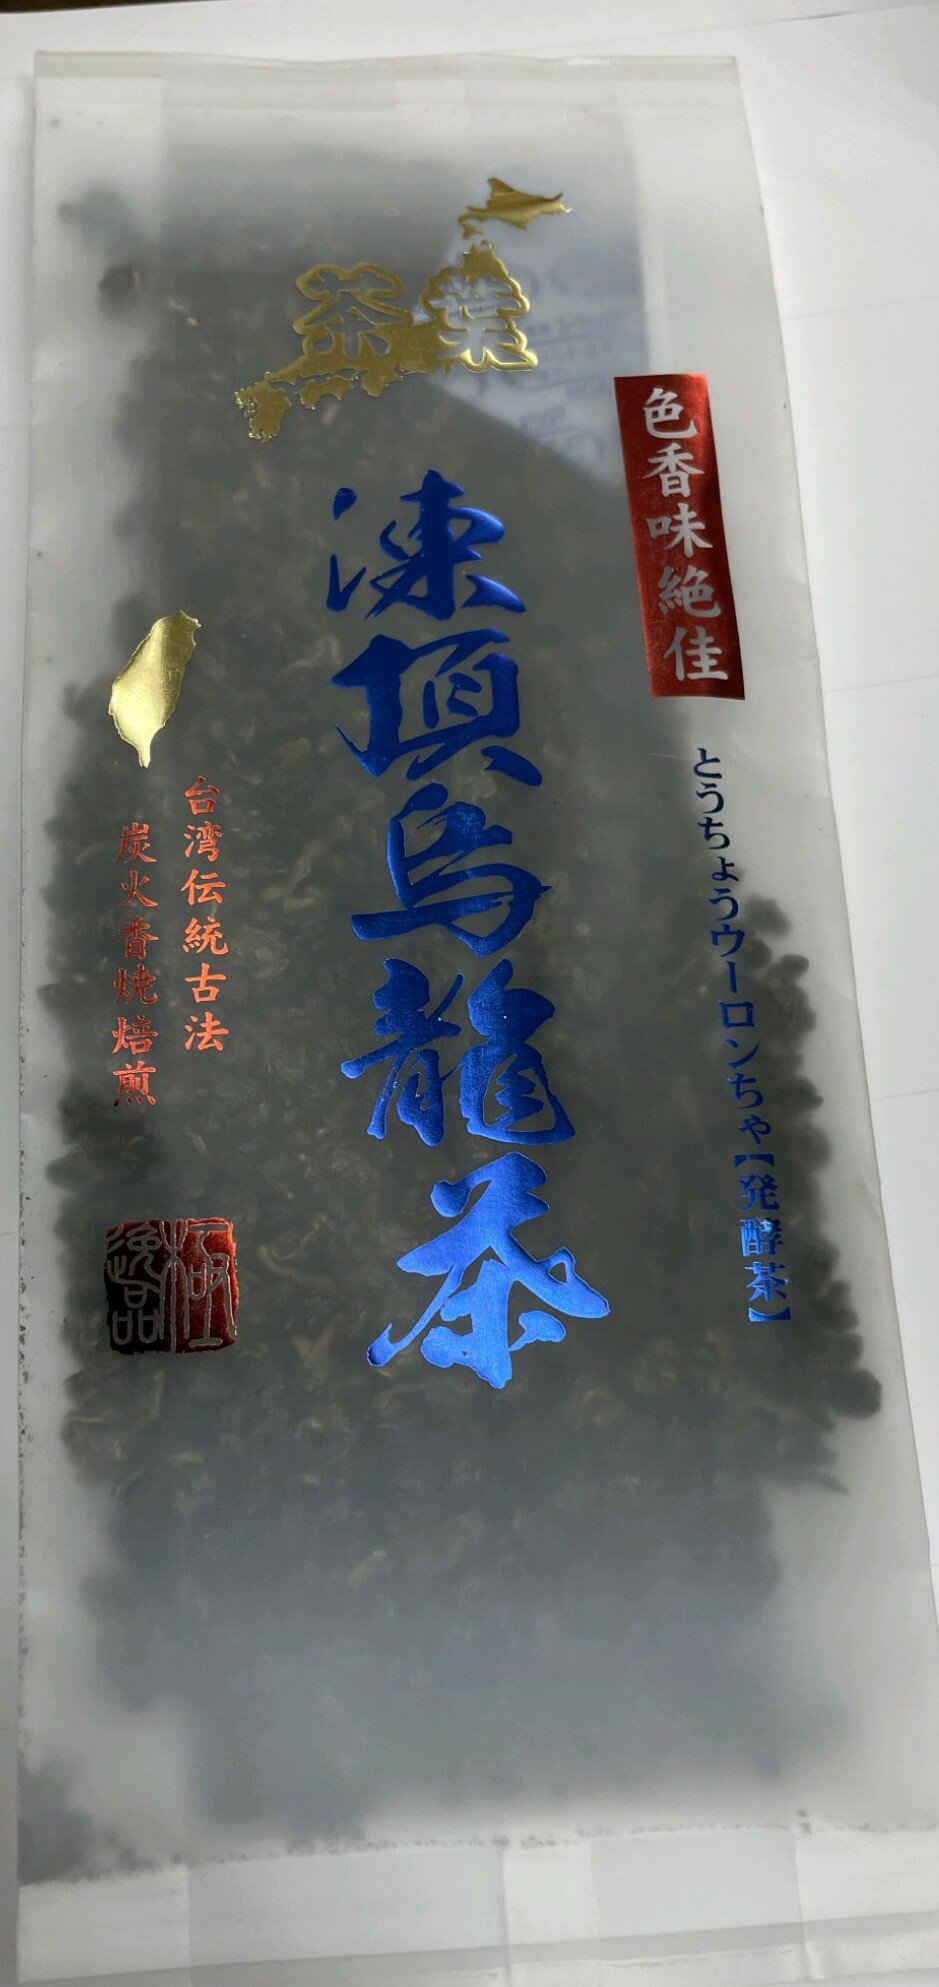 【パワーストーン烏龍茶】【台湾凍頂烏龍茶】半発酵茶　【 100g 】台湾伝統炭火香焼焙煎茶　スマイルビームでまろやかさが出ています。